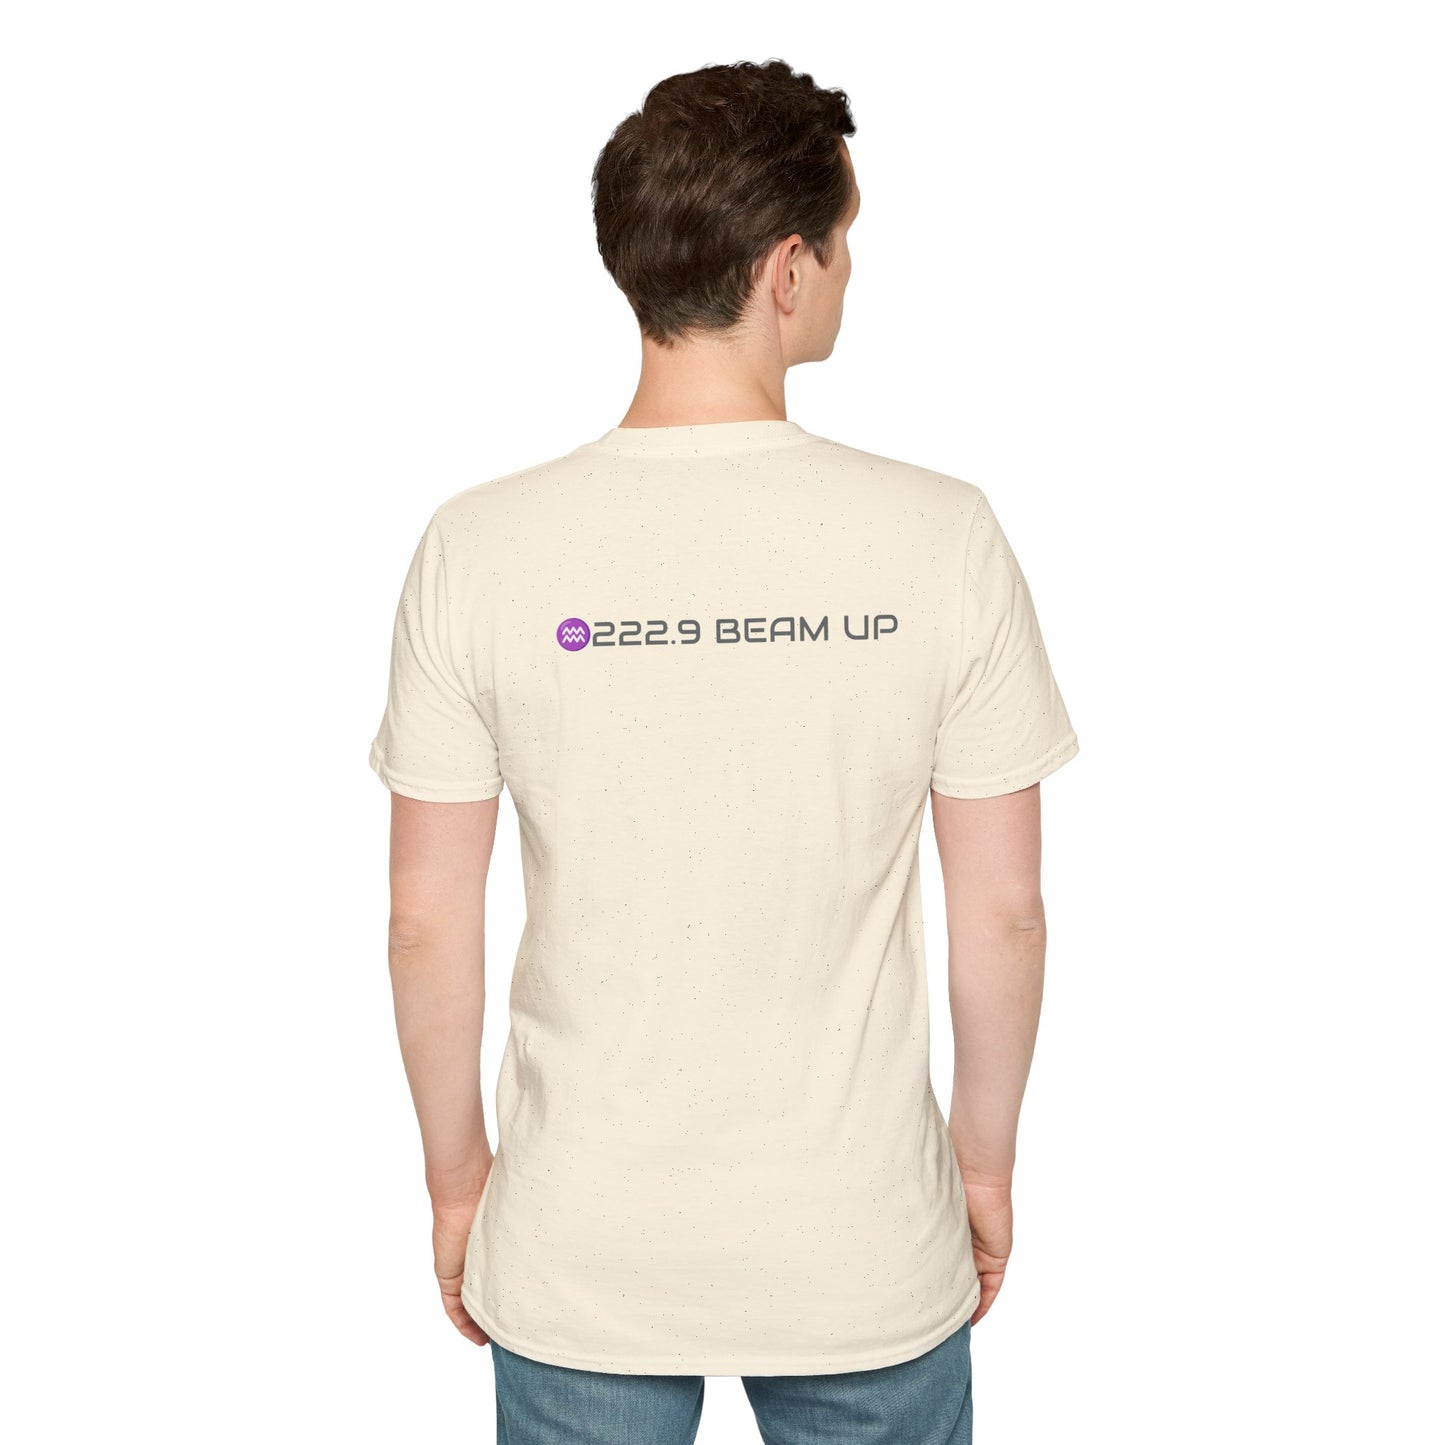 Aquarius Mars Softstyle T-Shirt